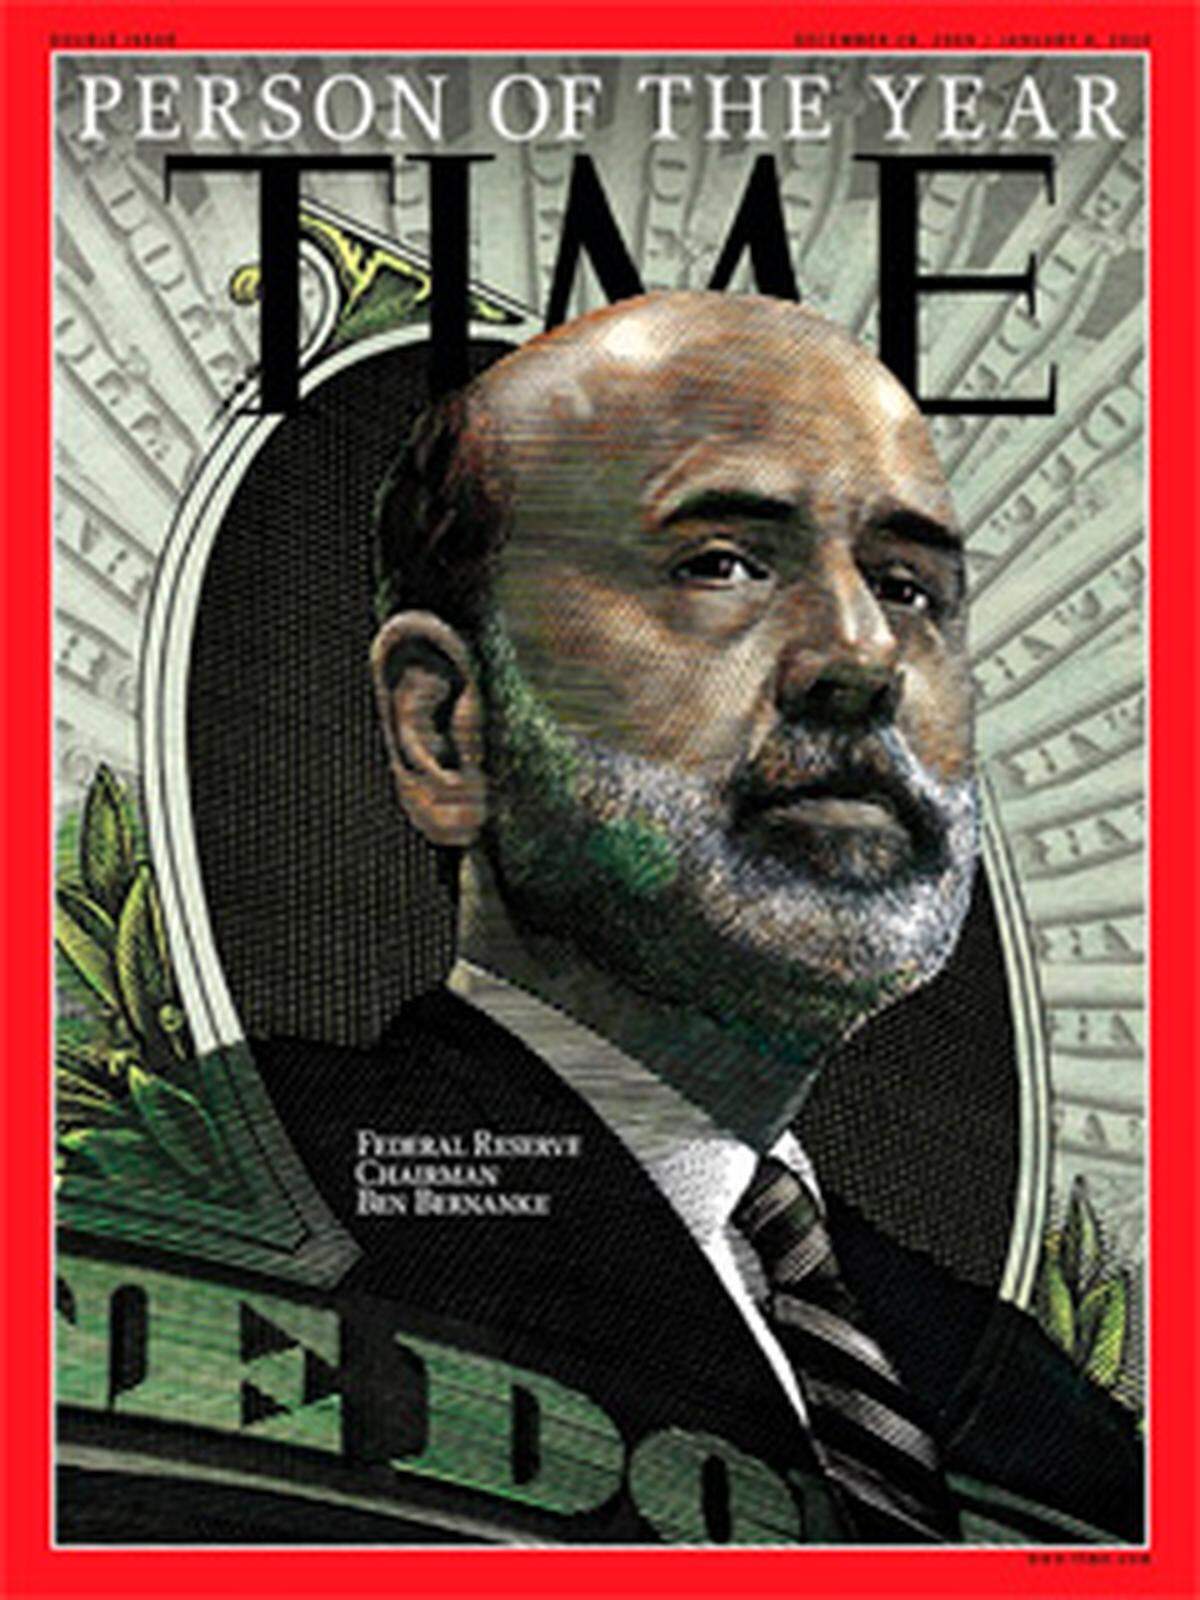 Das "Time"-Magazine wählte Ben Bernanke, den Chef der US-Notenbank Fed, zum Mann des Jahres 2009. Das Magazin lobte seine Geldpolitik im Zuge der Finanzkrise - diese hätte schlimmeres verhindert. Der US-Senat stimmte einer zweiten Amtszeit zwar mit 70 zu 30 Stimmen zu, doch davor musste er sich herben Anfeindungen stellen.